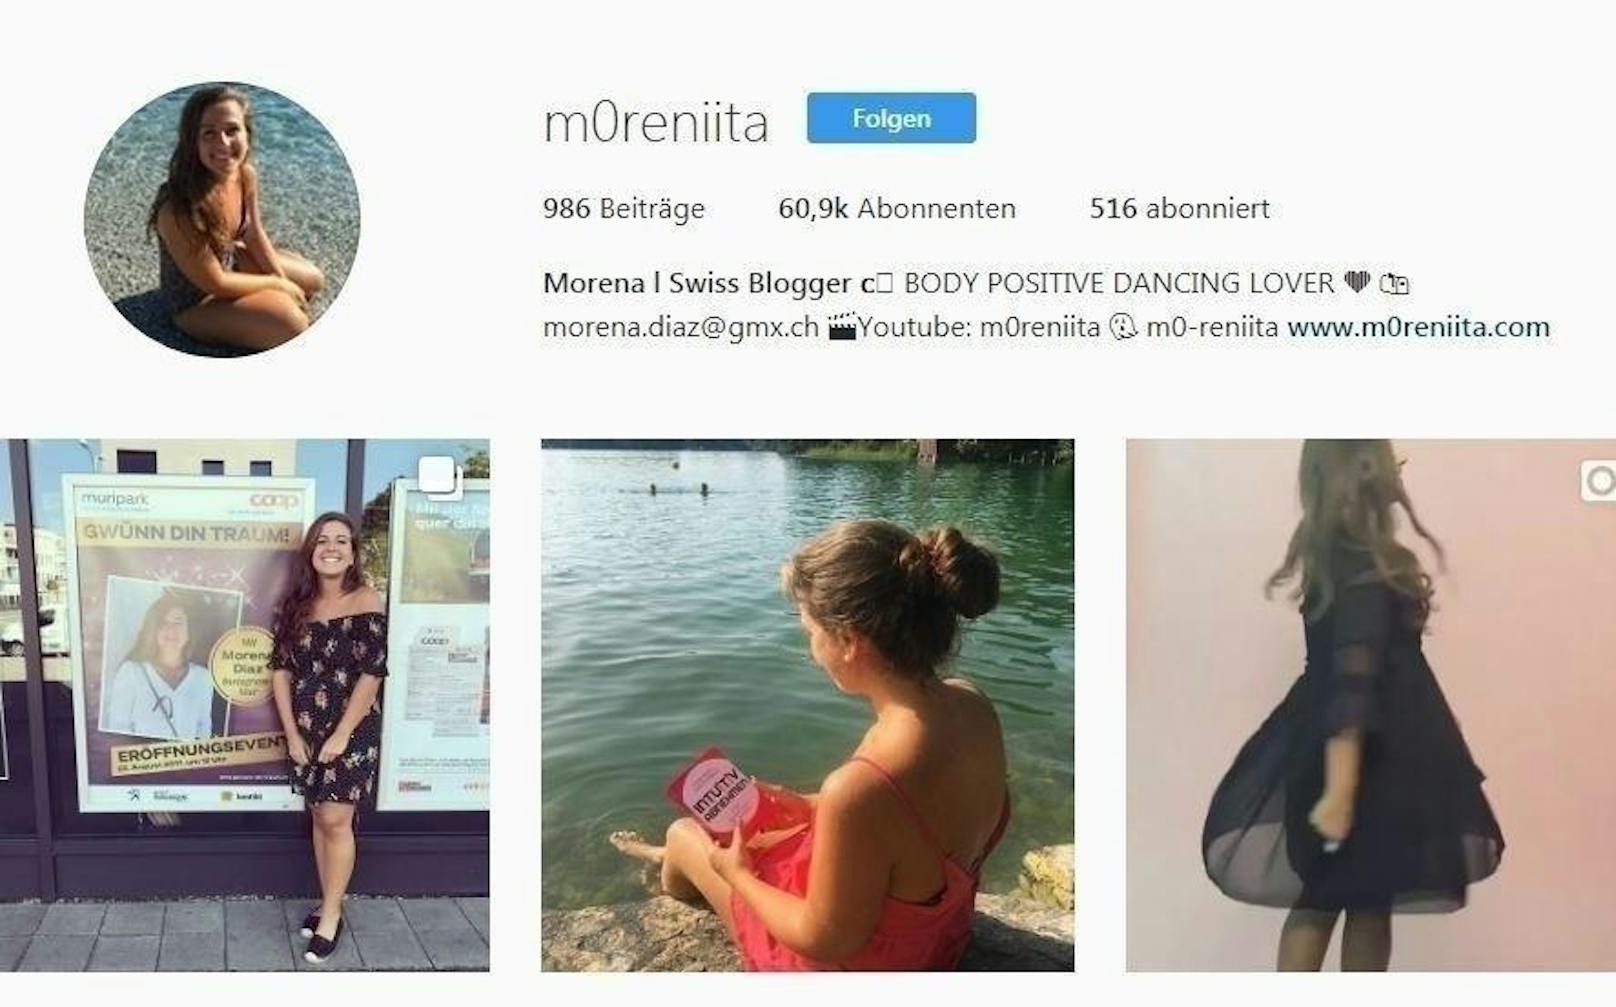 Morena Diaz alias "m0reniita" erreicht mit ihren Fotos auf Instagram mehr als 60.000 User. "Body Positivity" ist ihr großes Anliegen, das sie mit Bikini-Fotos verbreiten will.